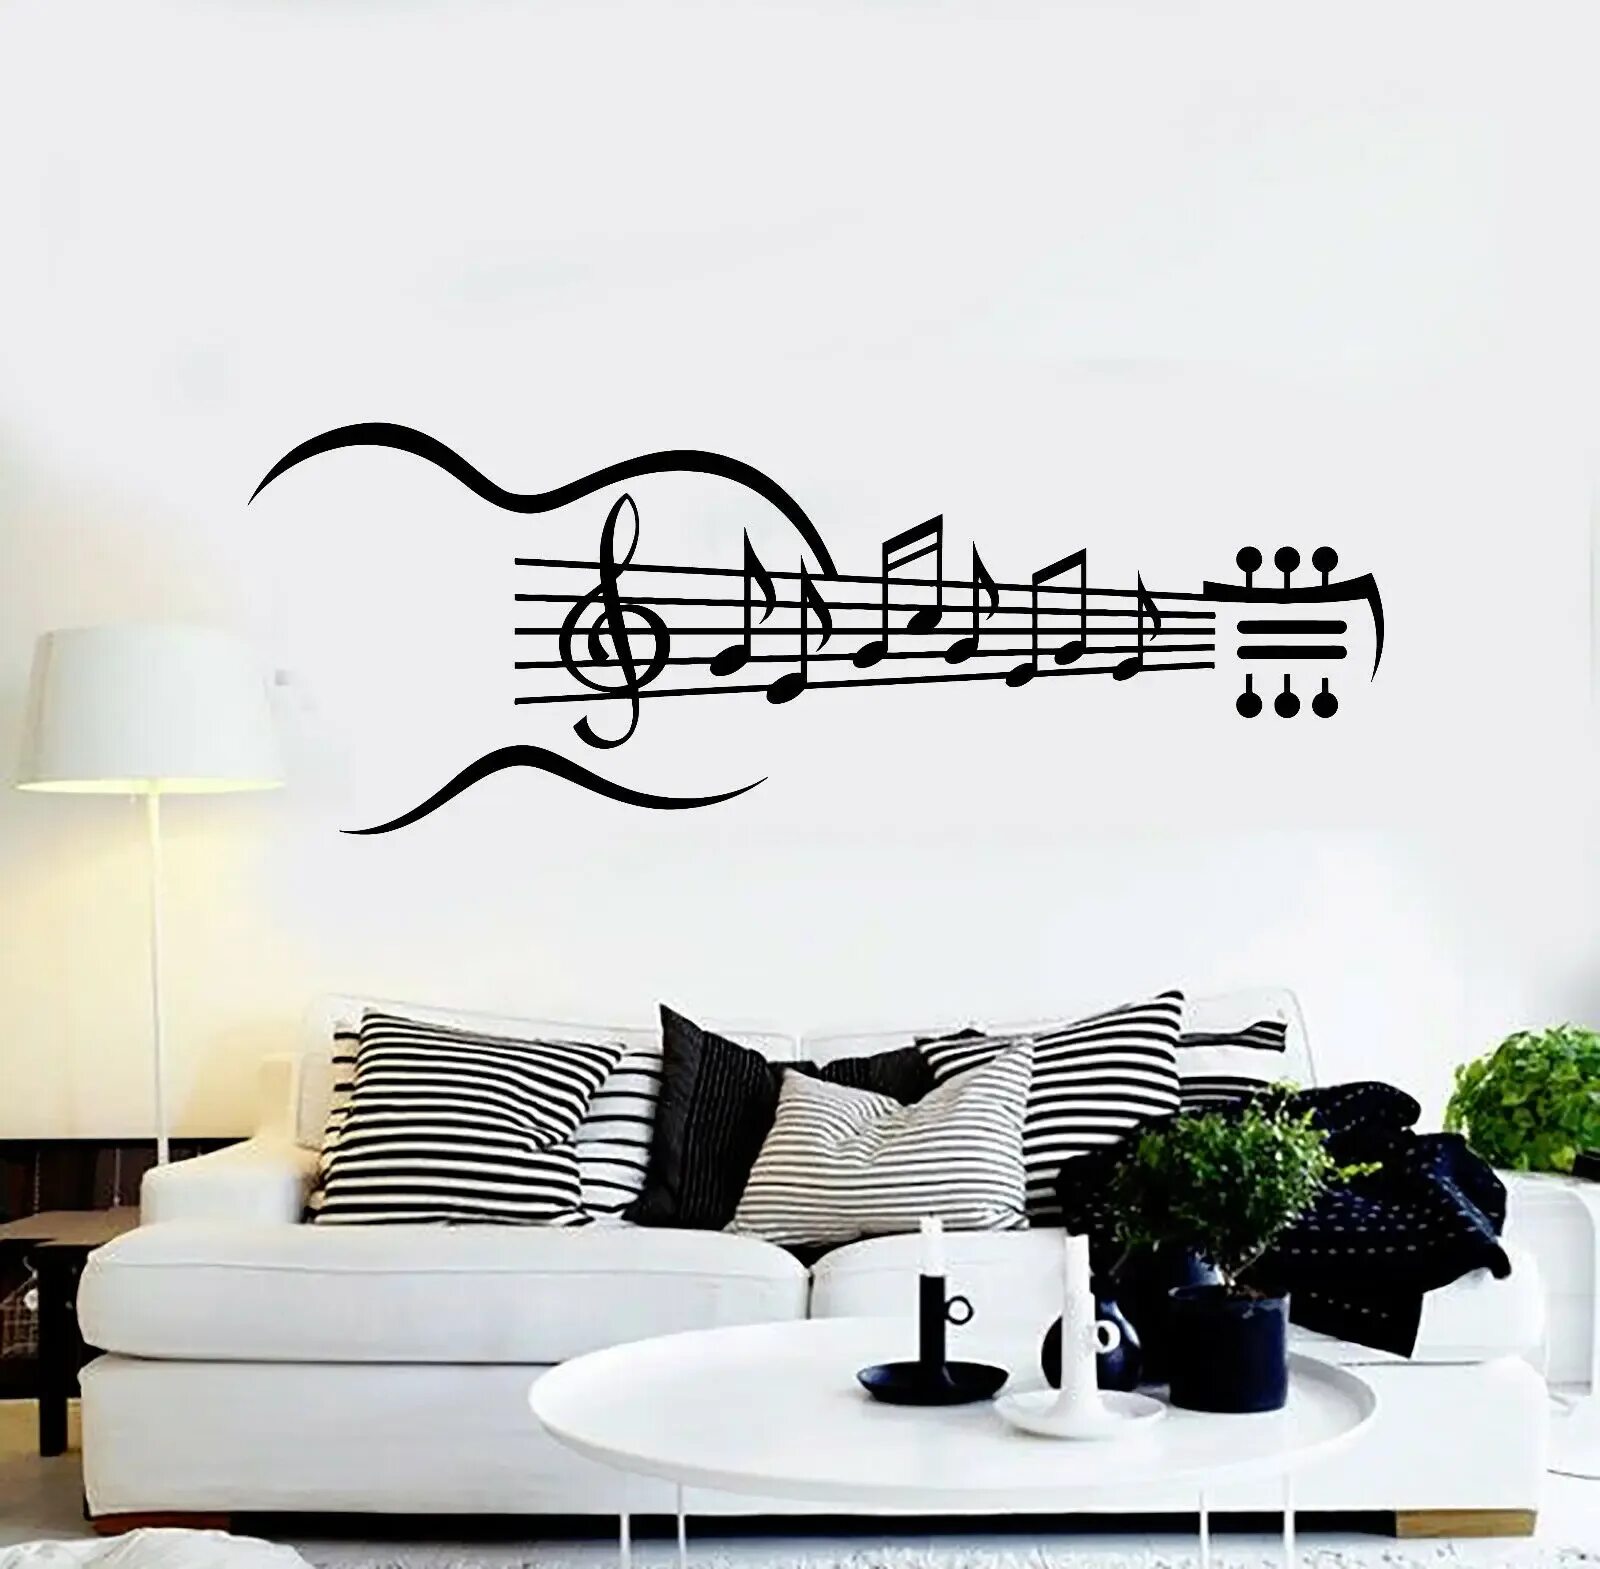 Руками стены песня. Наклейки на стену. Музыкальные наклейки на стену. Украшение стен в музыкальном стиле. Наклейки на стену музыкальная тематика.